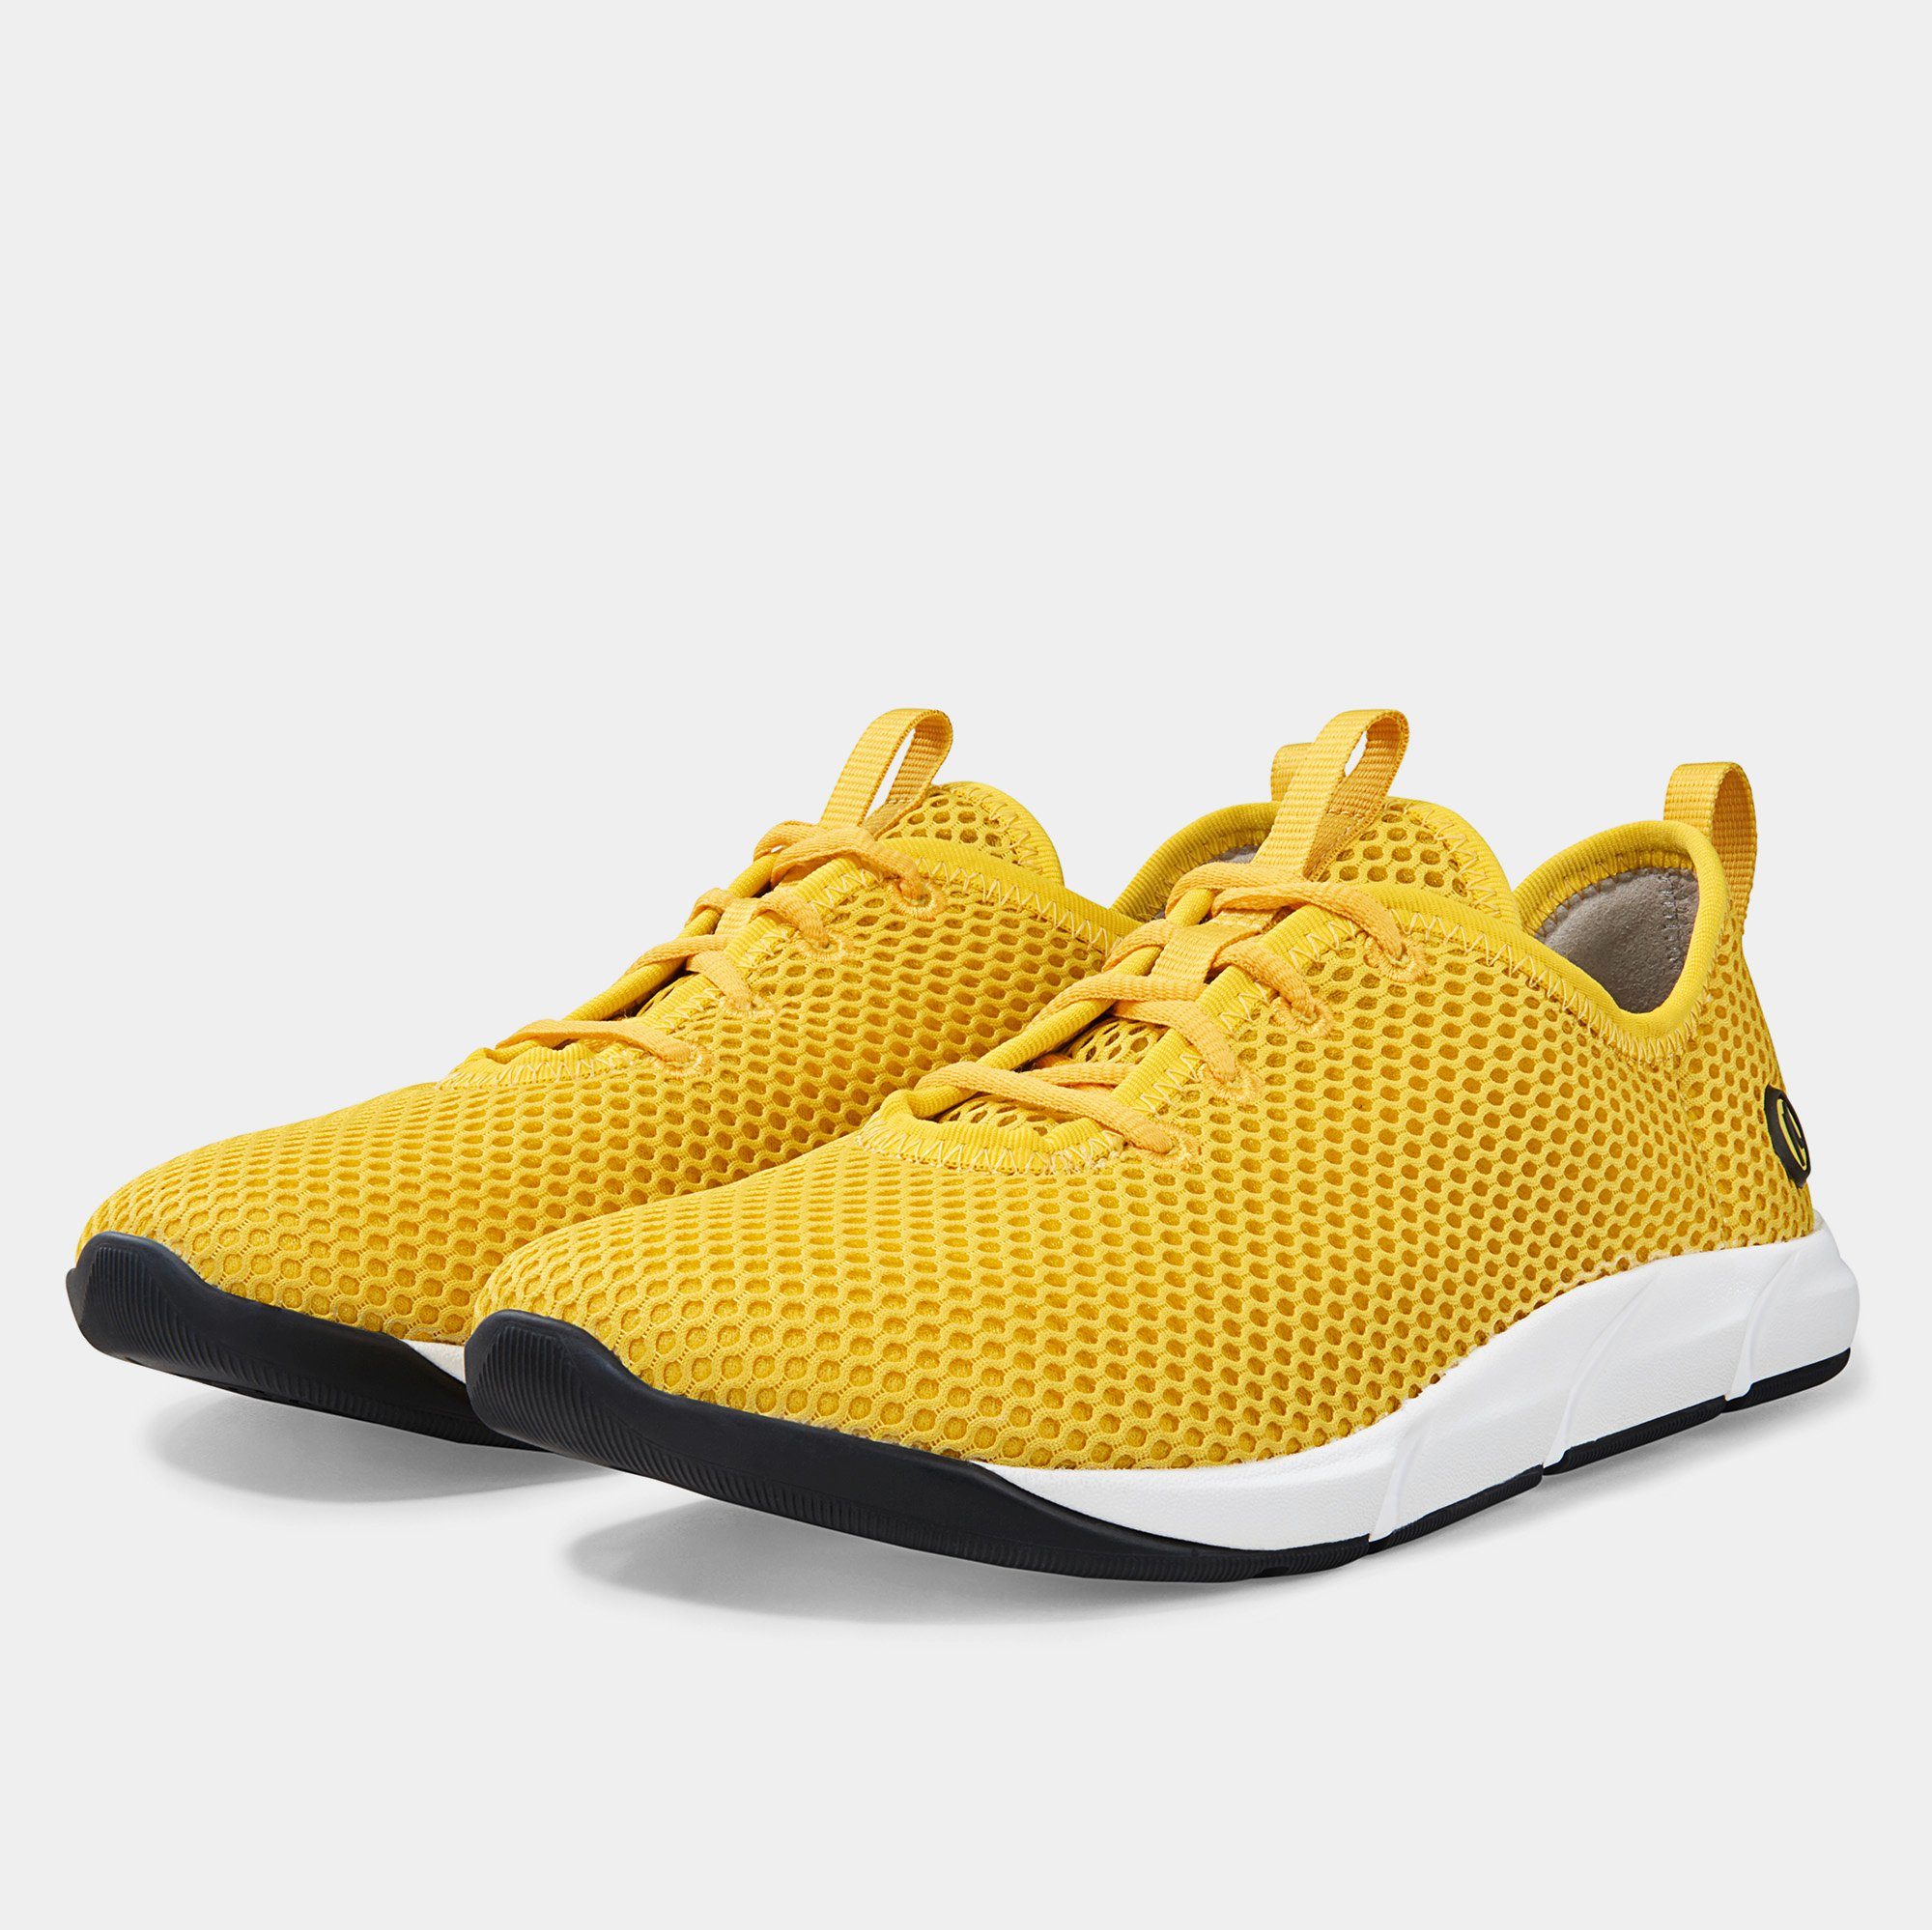 BÄR Damenschuh - Modell motionToes 2.0 in der Farbe Gelb Sneaker